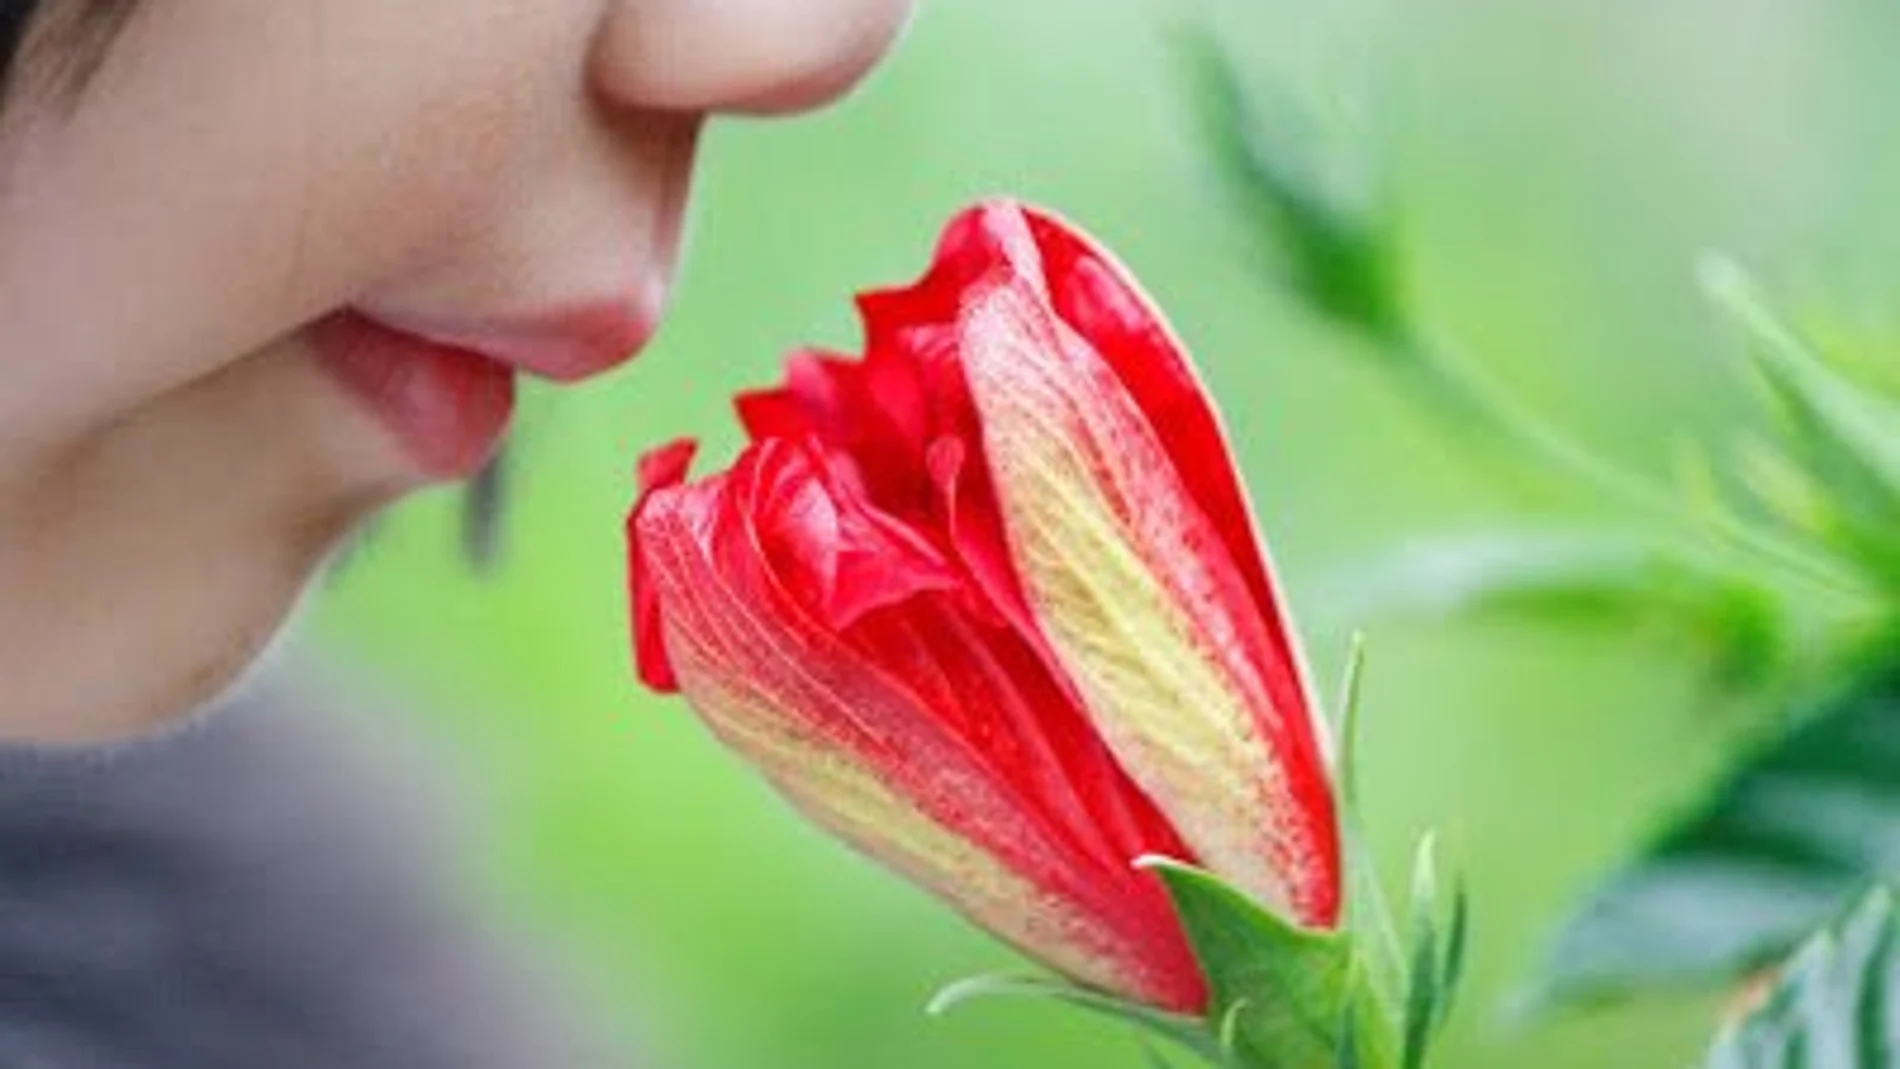 Respirar por la nariz ayuda a consolidar los recuerdos porque facilita la comunicación entre las redes sensoriales y la memoria.